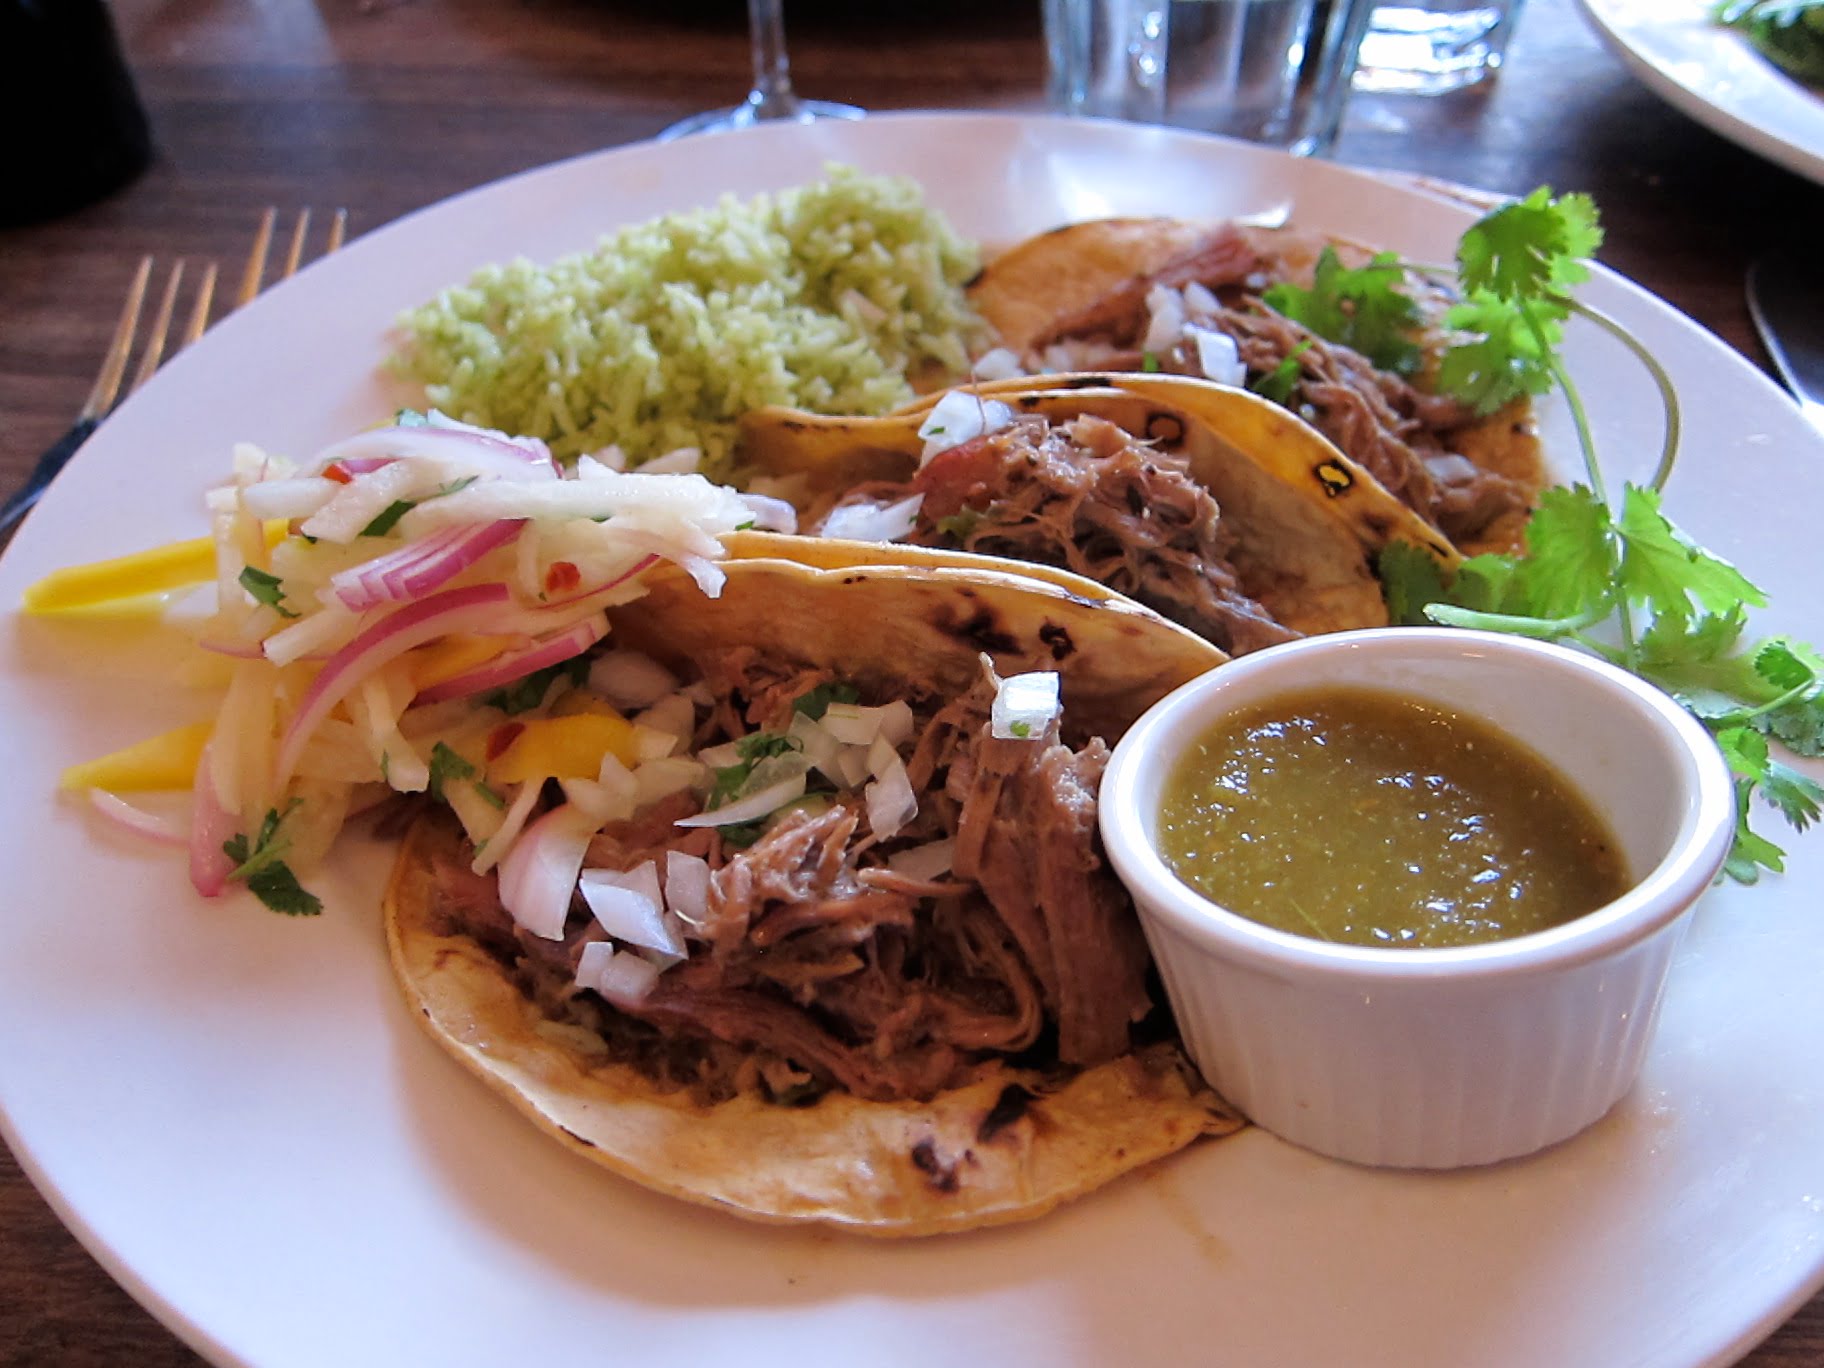 Geröstetes Lammfleisch in Taco mit Gemüsesalat